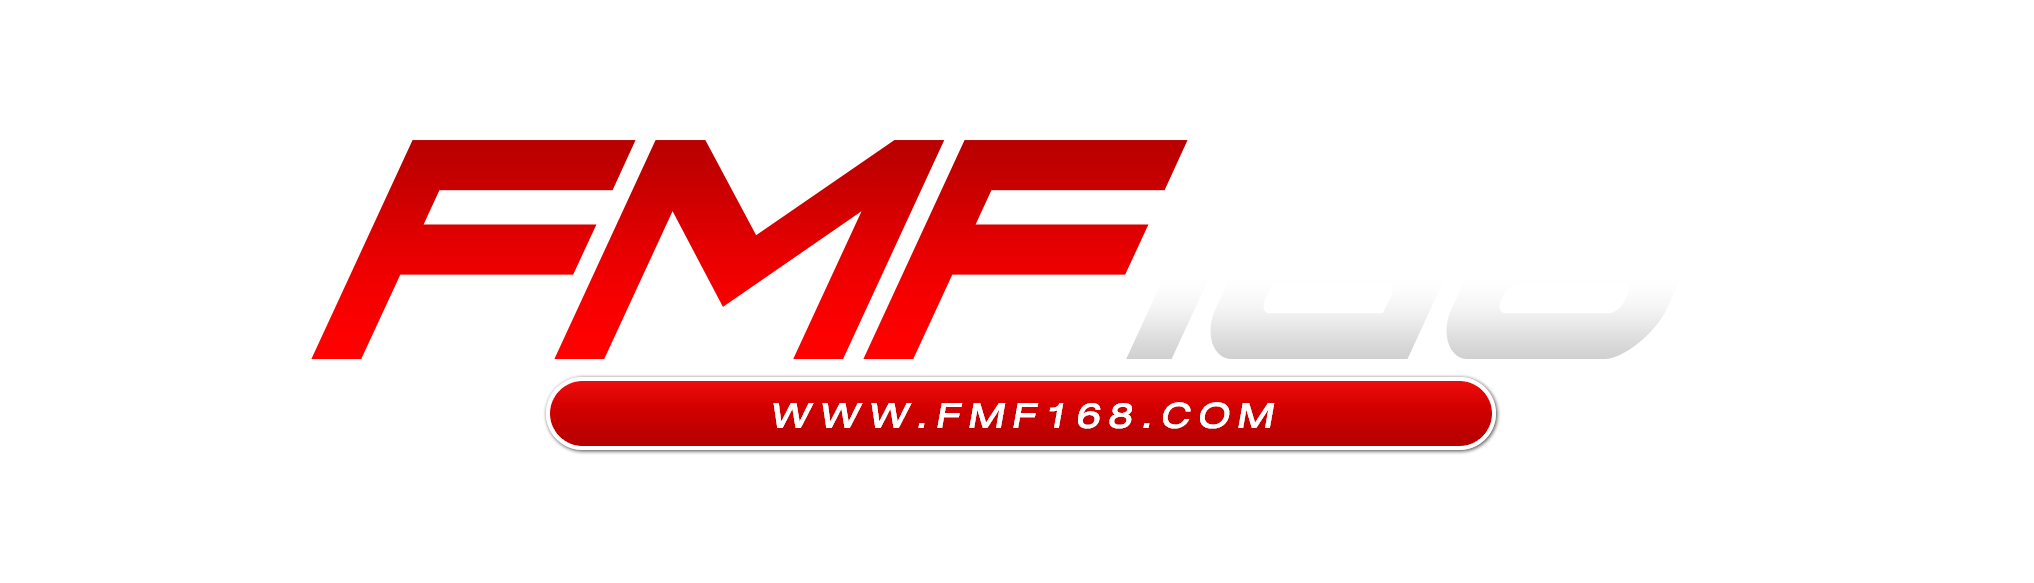 fmf168